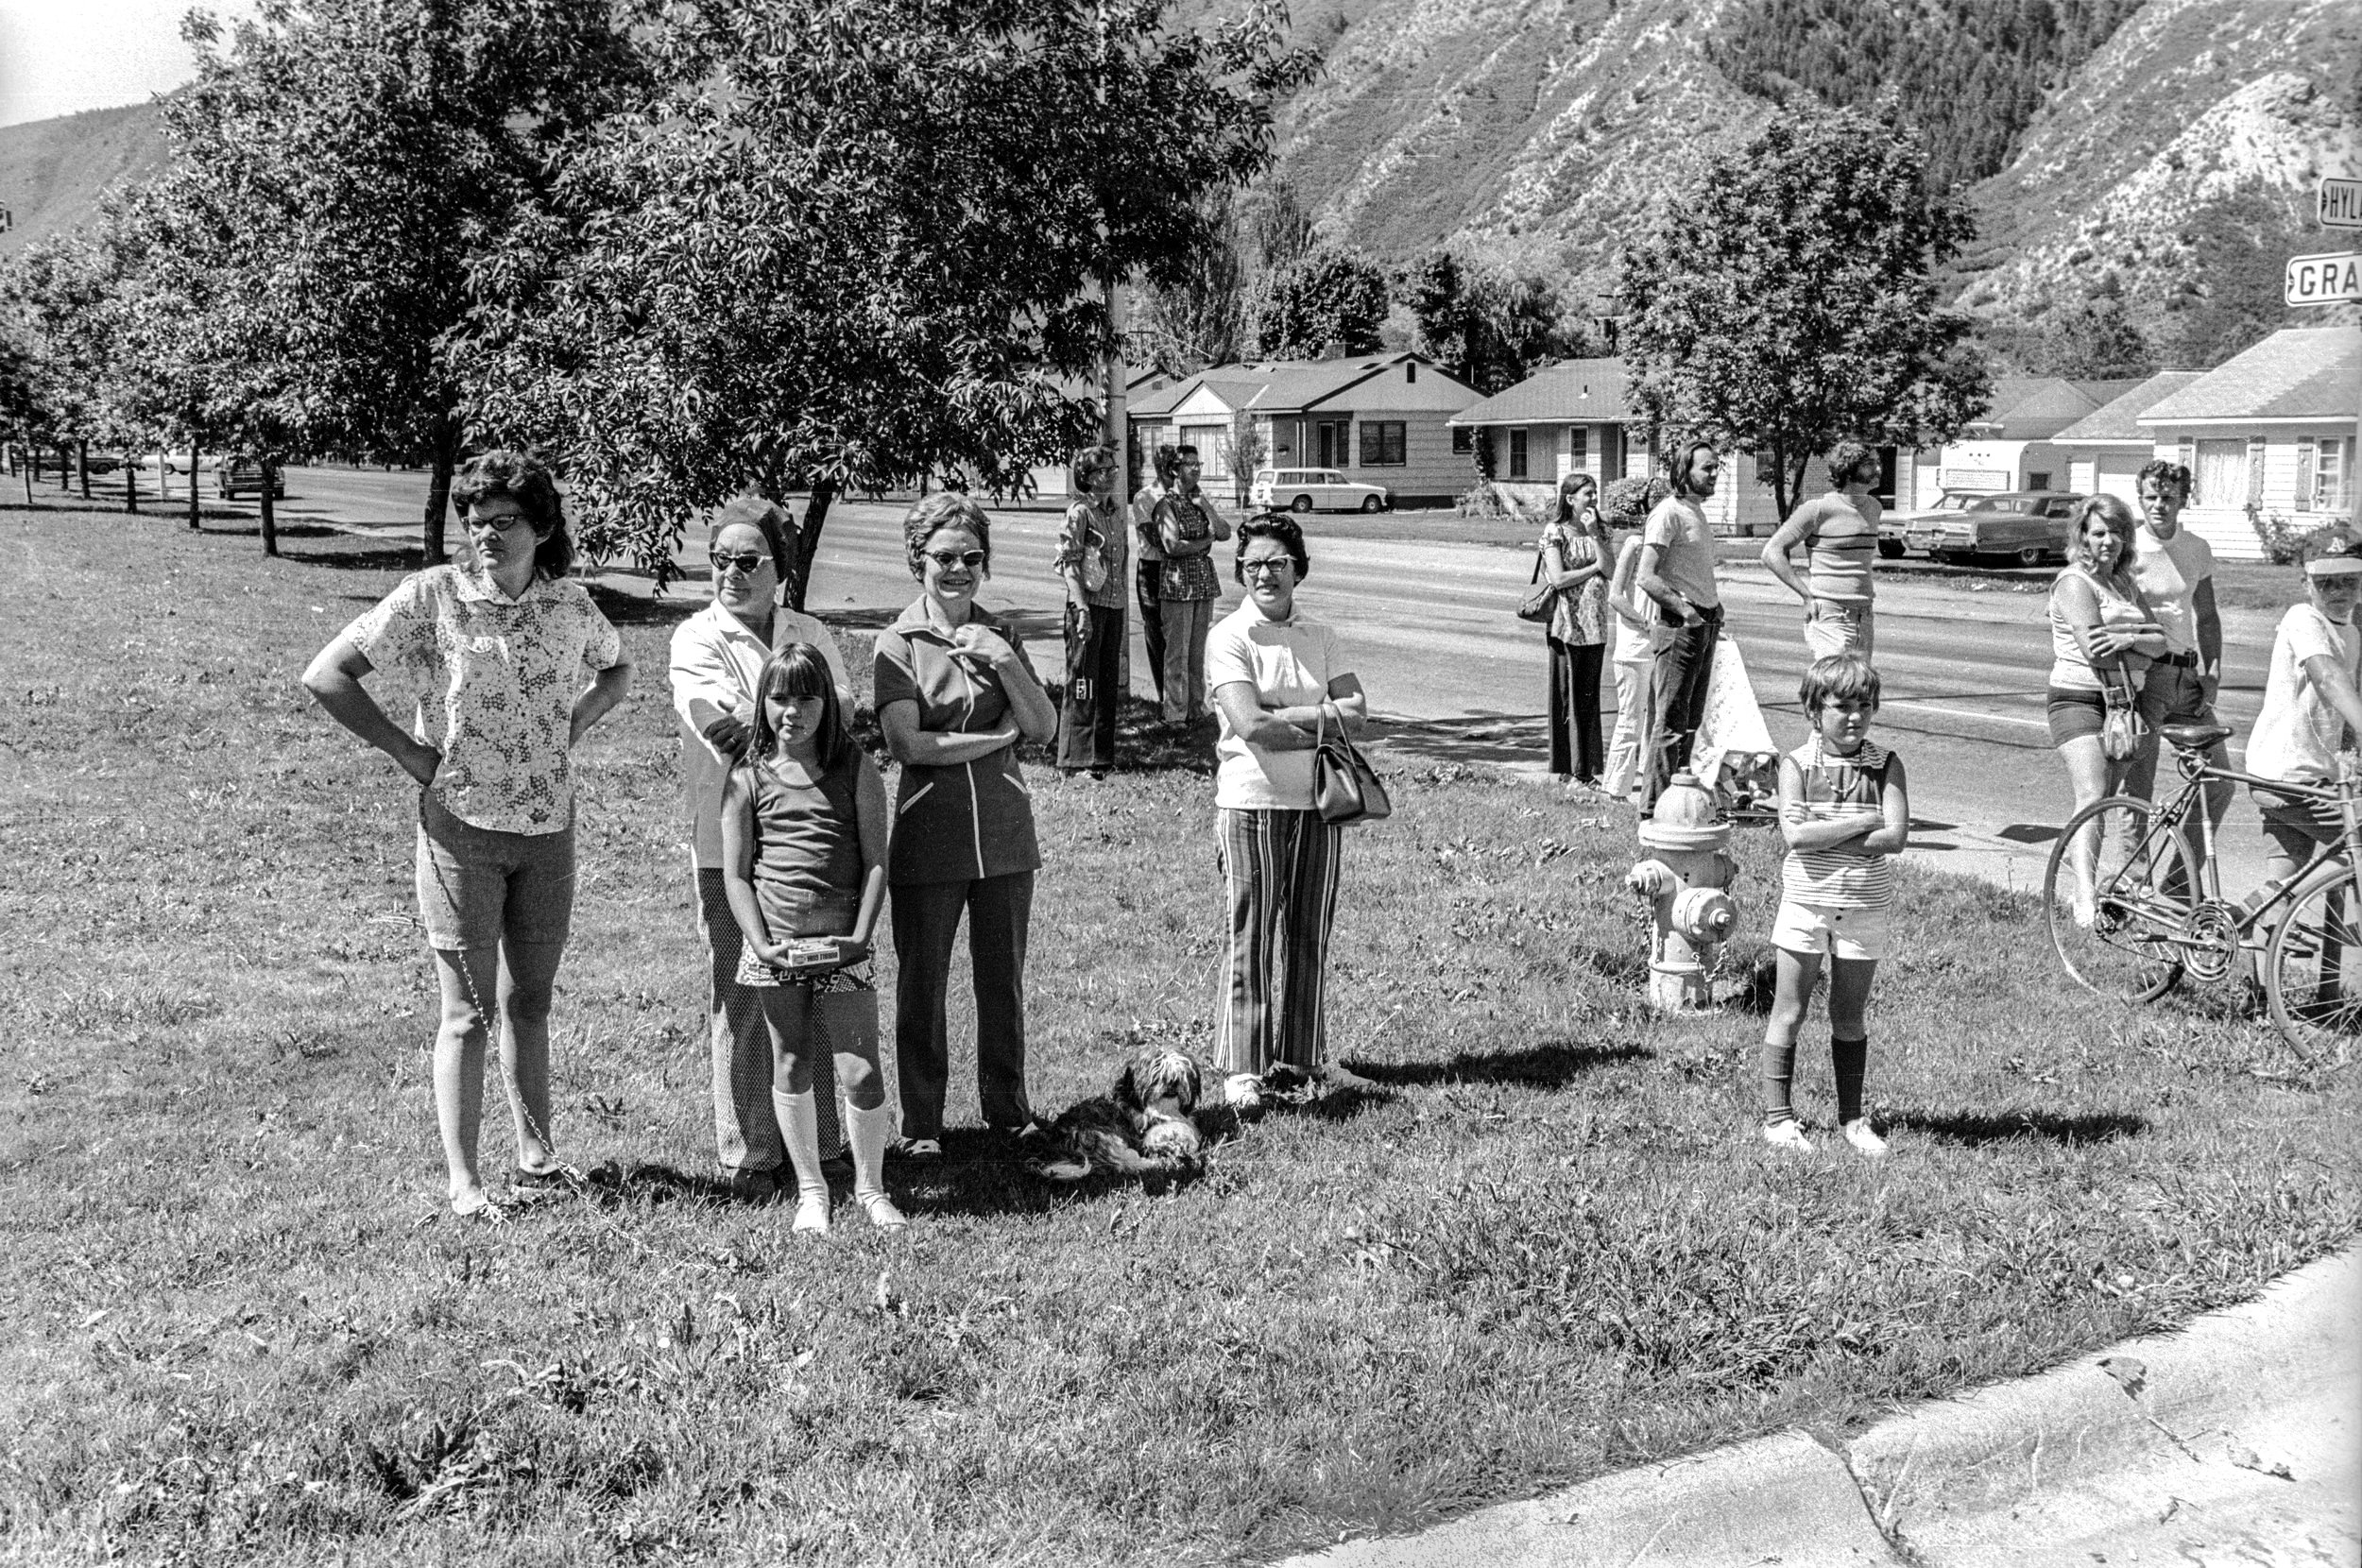   Glenwood Springs, CO, 1972  